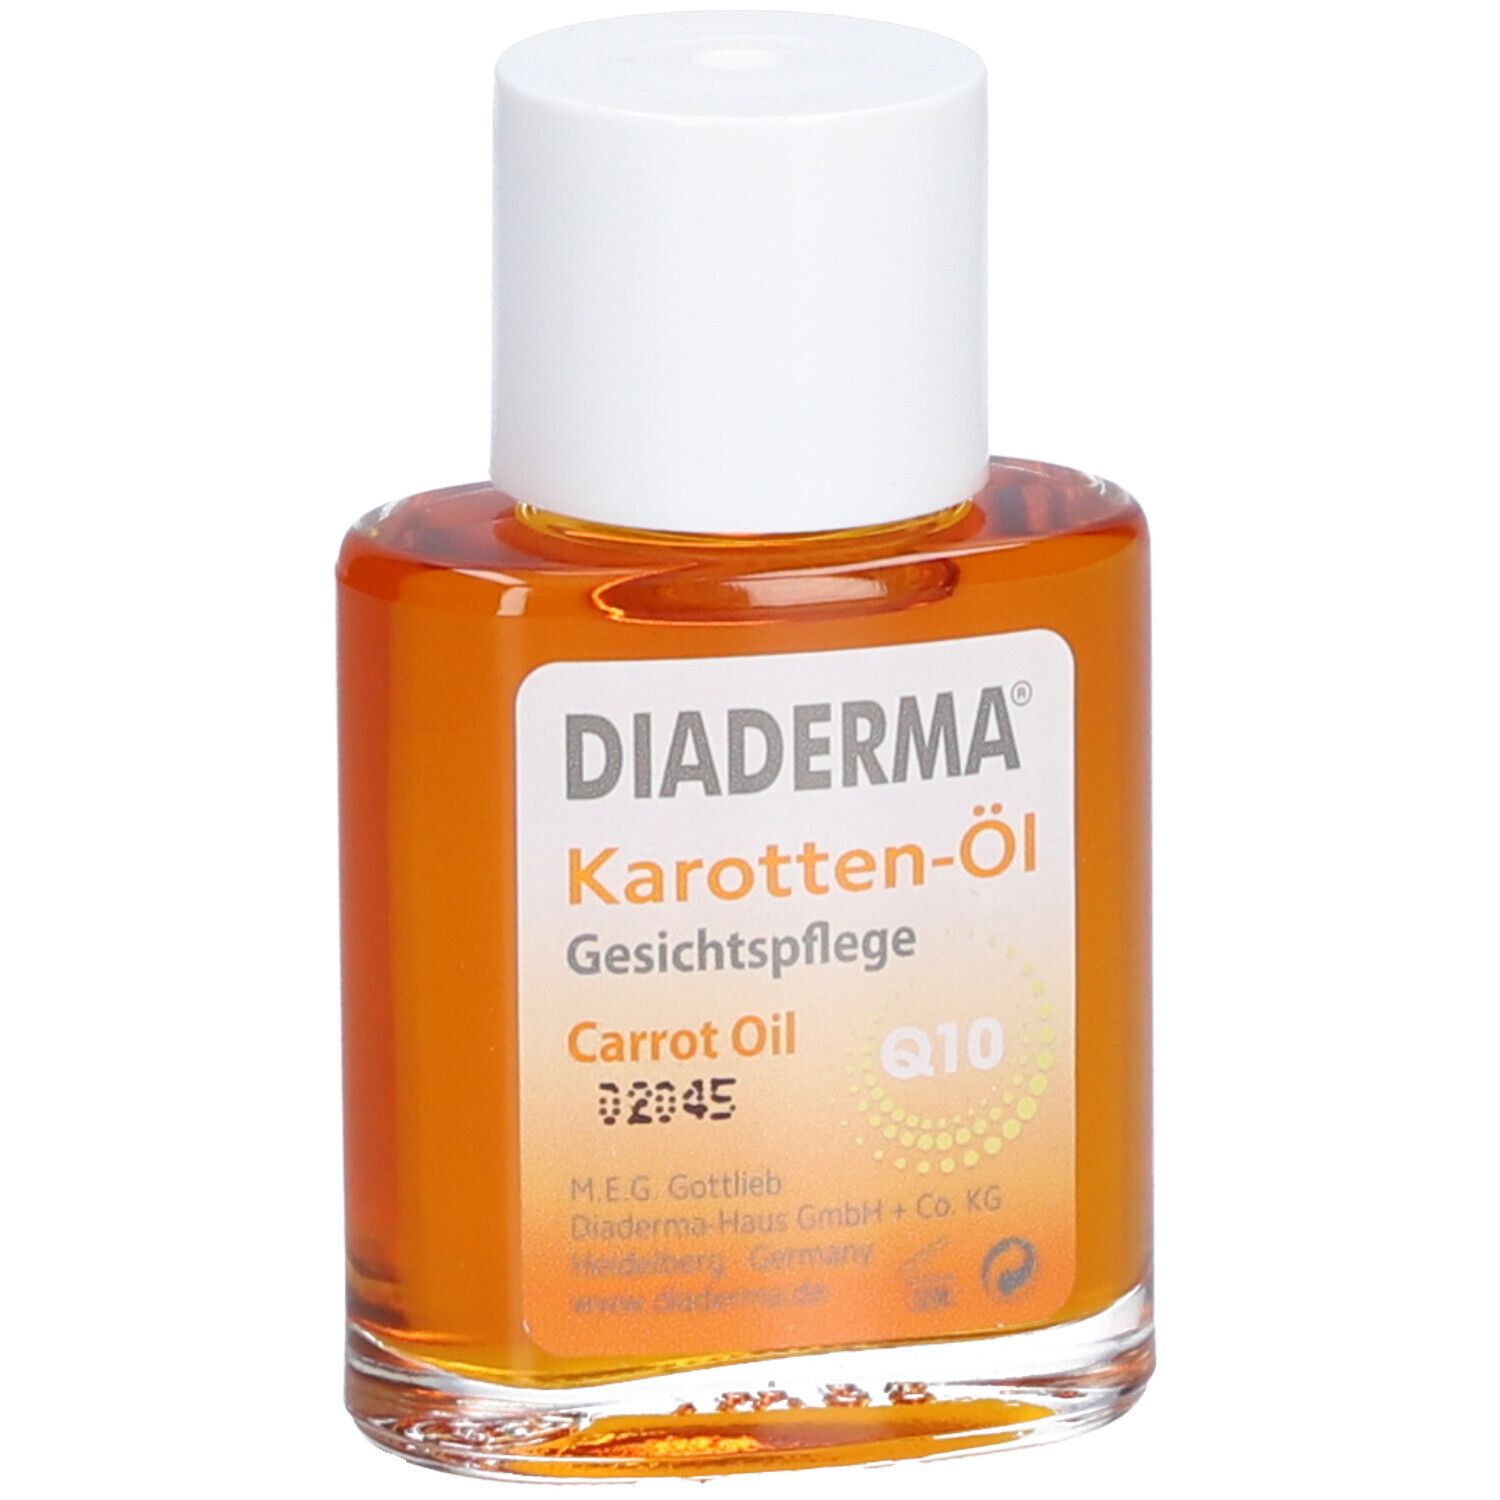 DIADERMA® Karotten-Öl Q10